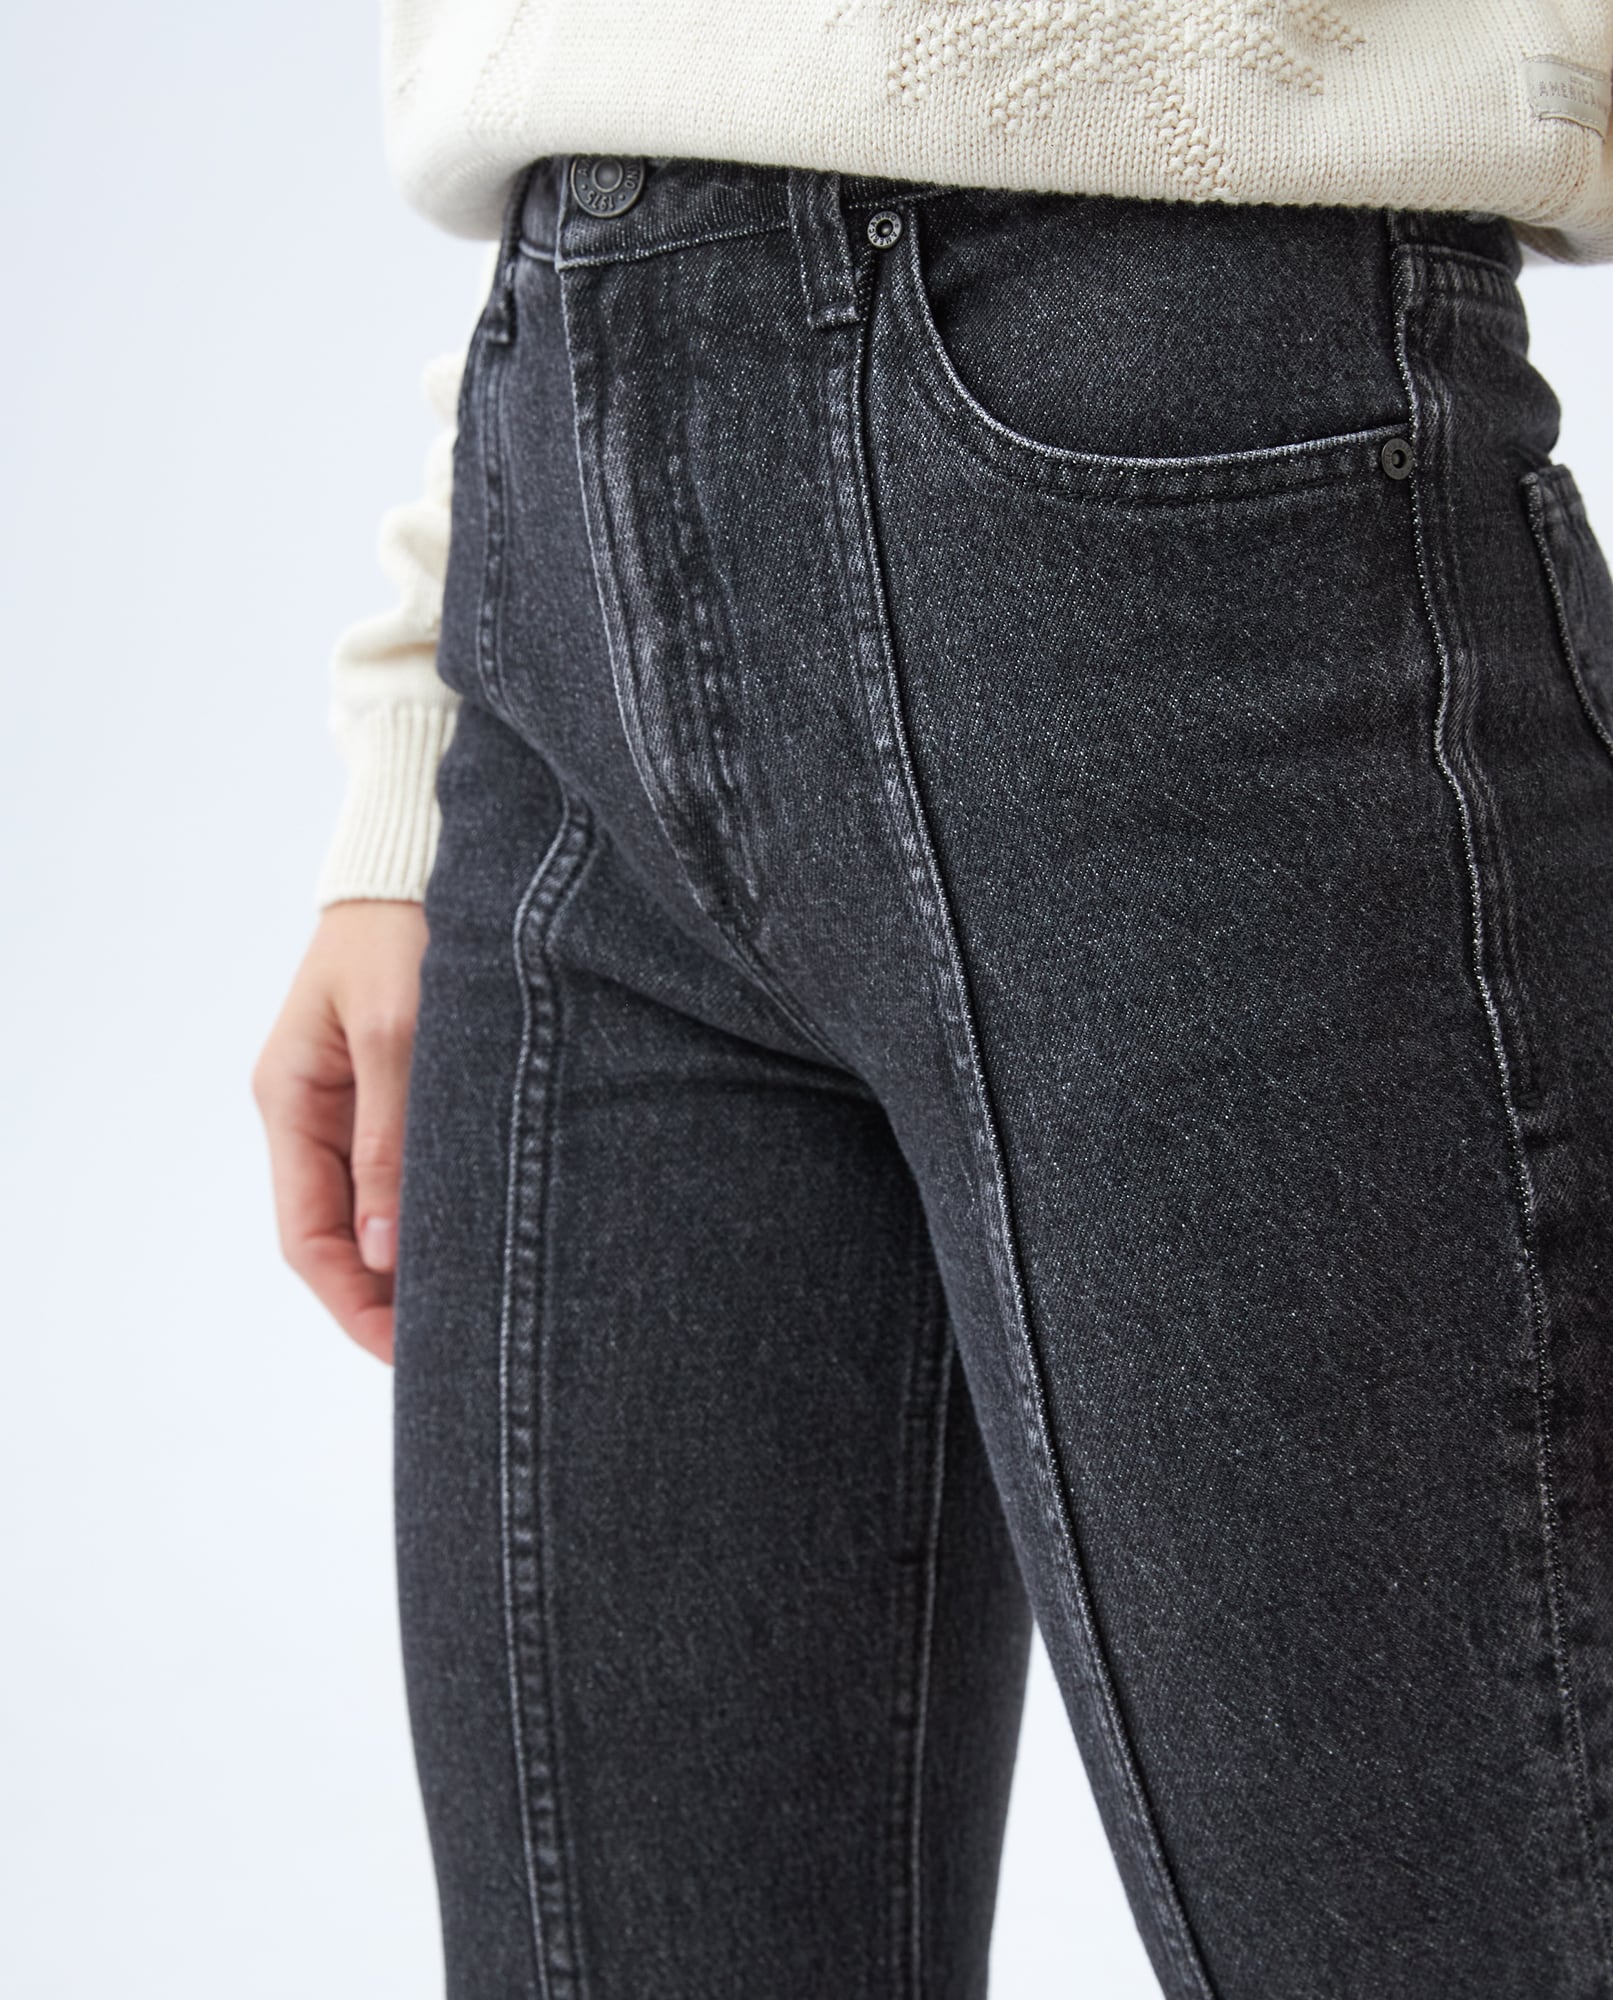 Jeans De Mujer, Silueta Regular, Tono Oscuro Clásico 30160210